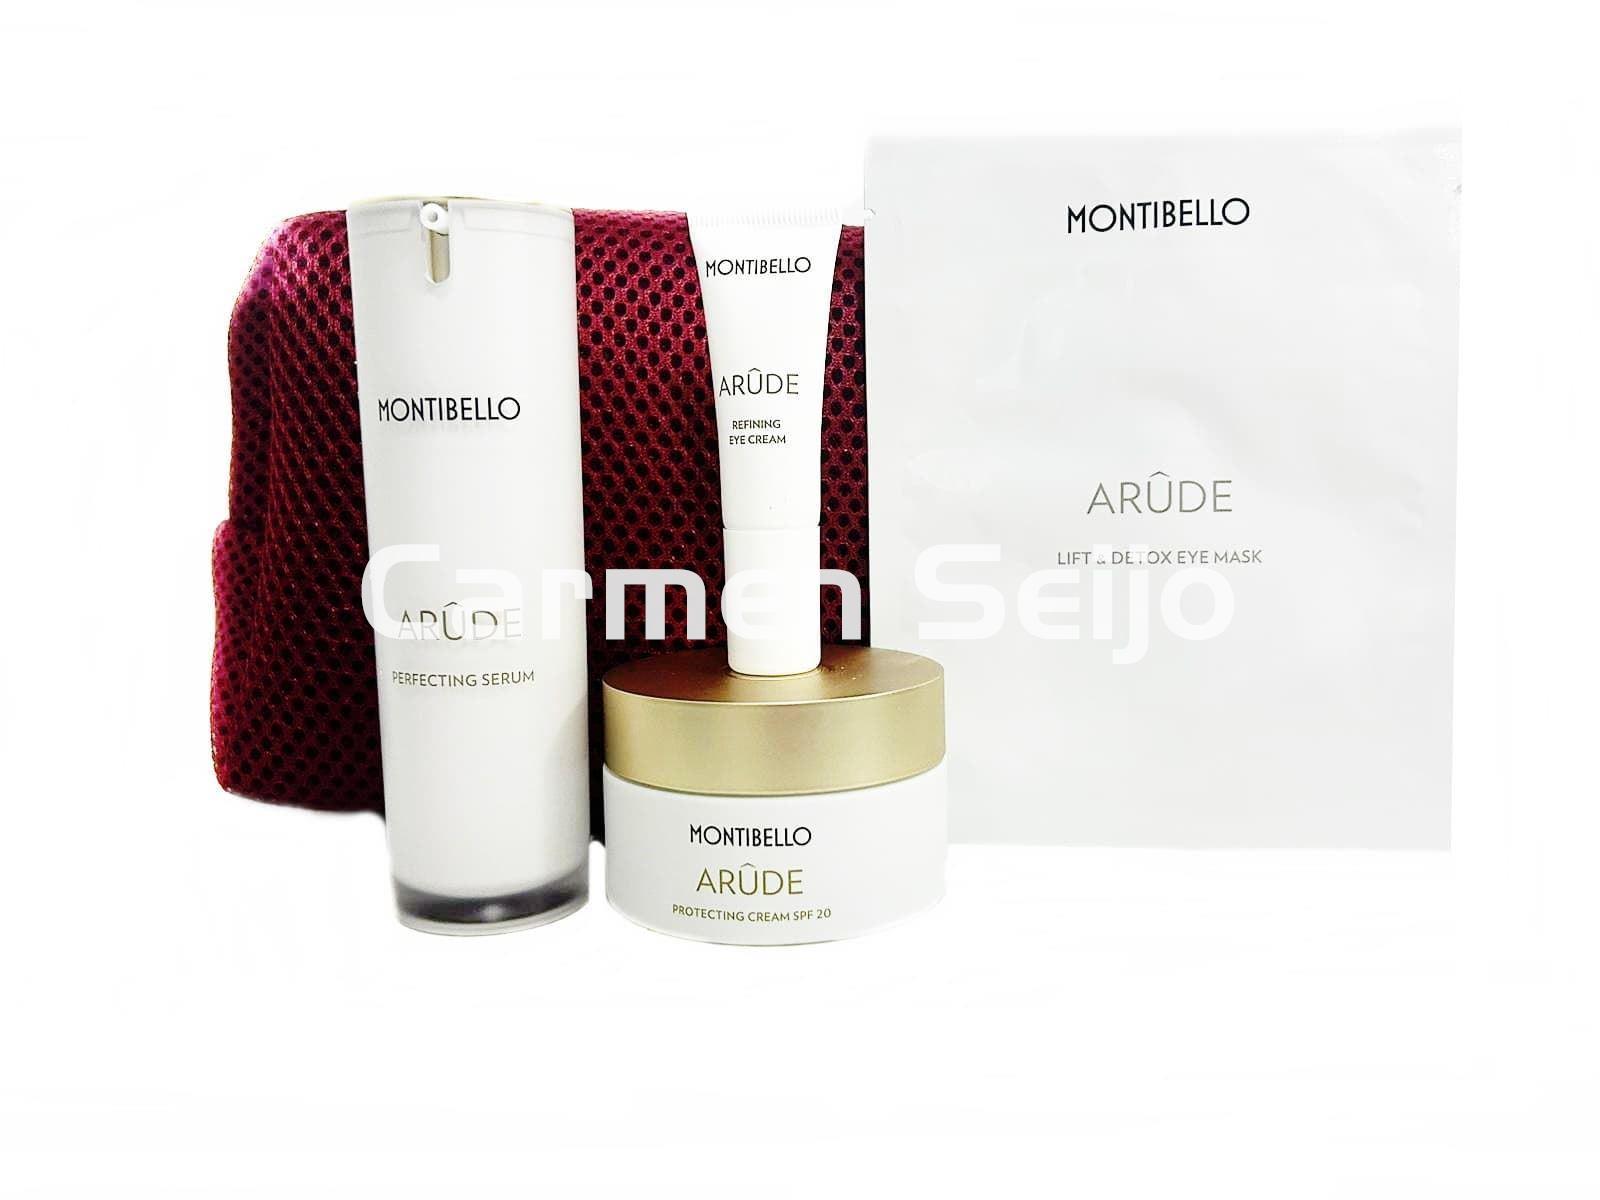 Montibello Pack Arude Protecting Cream SPF 20 + Sérum** - Imagen 1